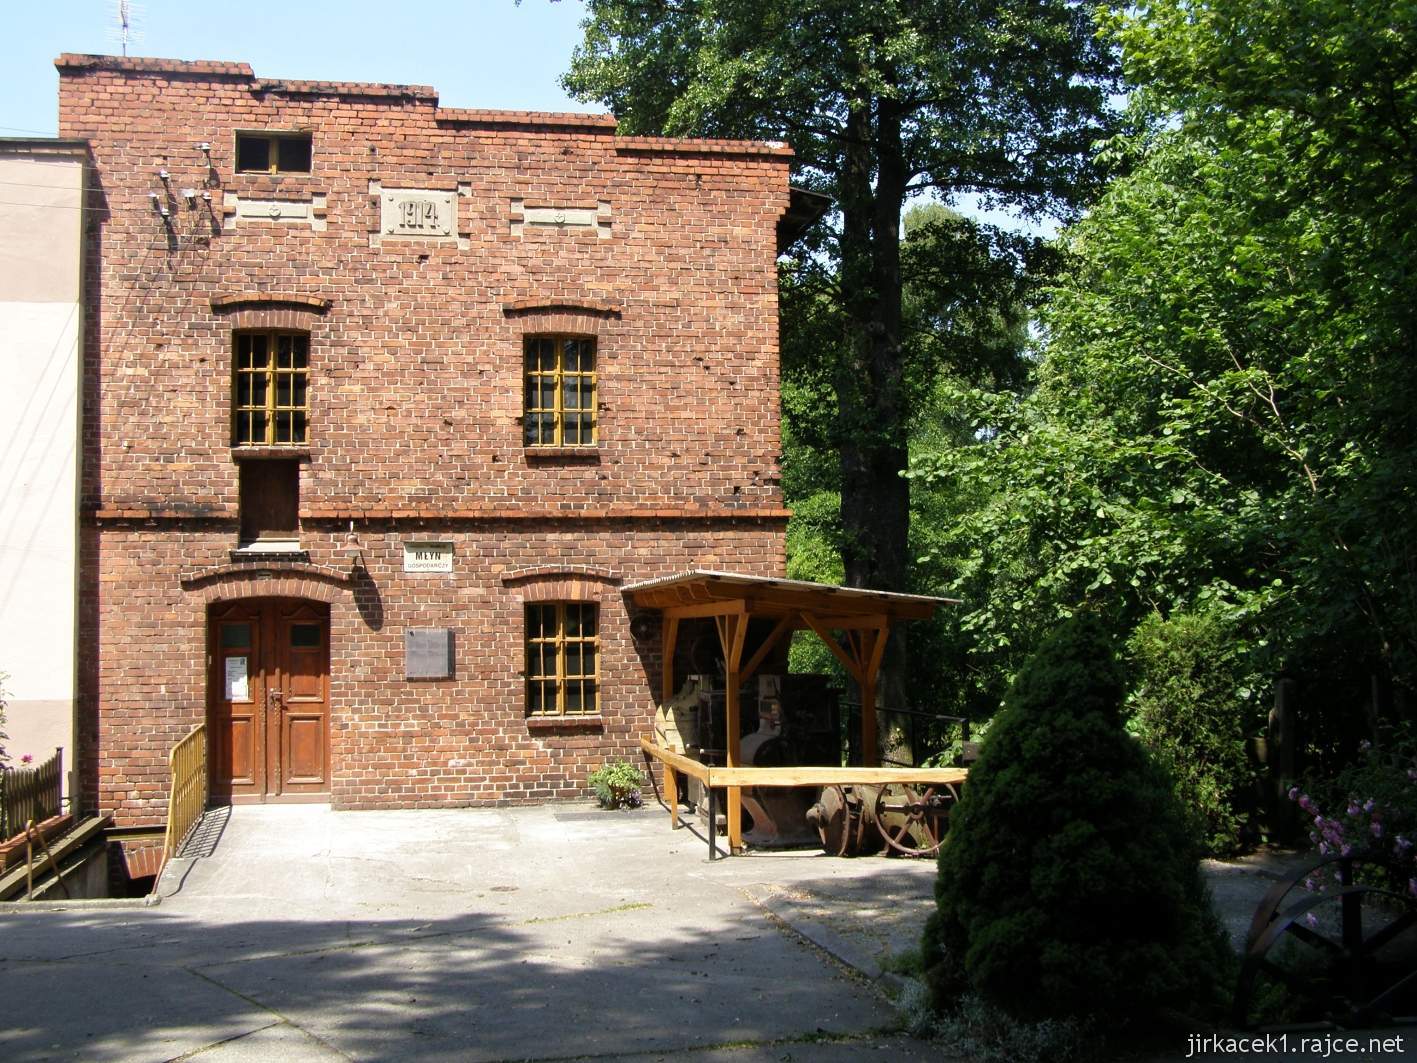 Tworków - Pawlikův mlýn (Zabytkowy mlyn w Tworkowie) - budova mlýna